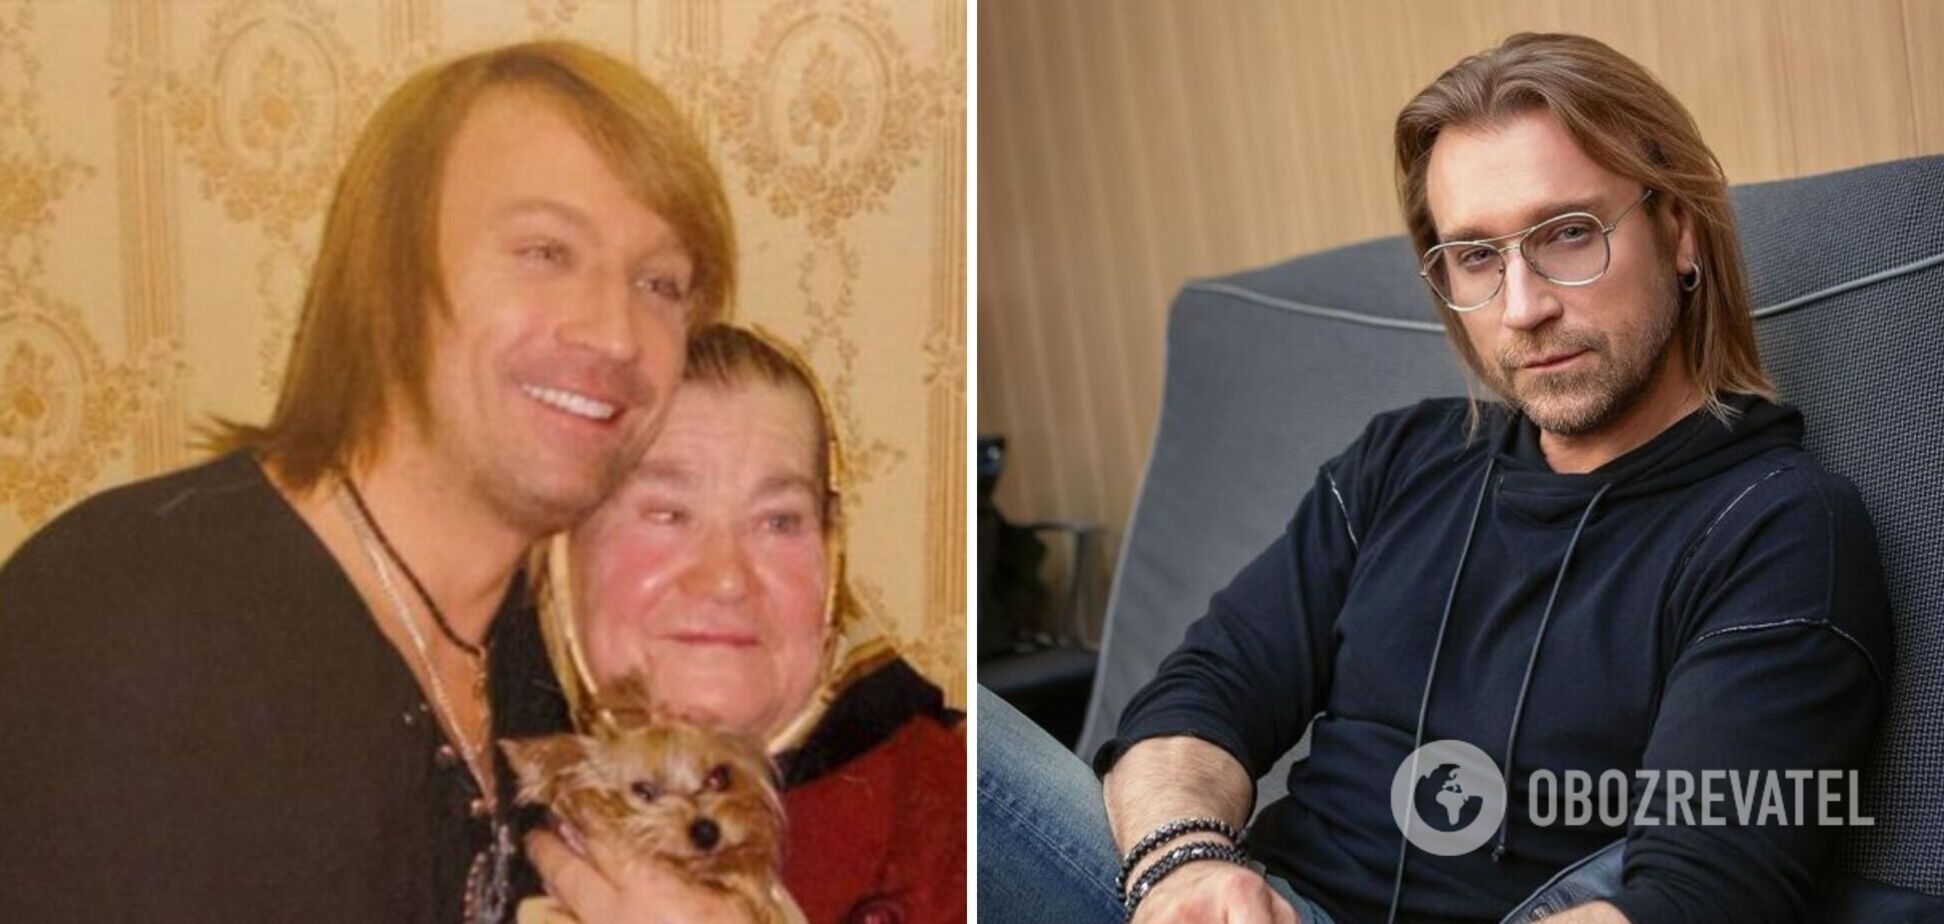 Отец не был ни на одном концерте сына, а мать пострадала от скандала: что известно о родителях 'пропавшего' Олега Винника